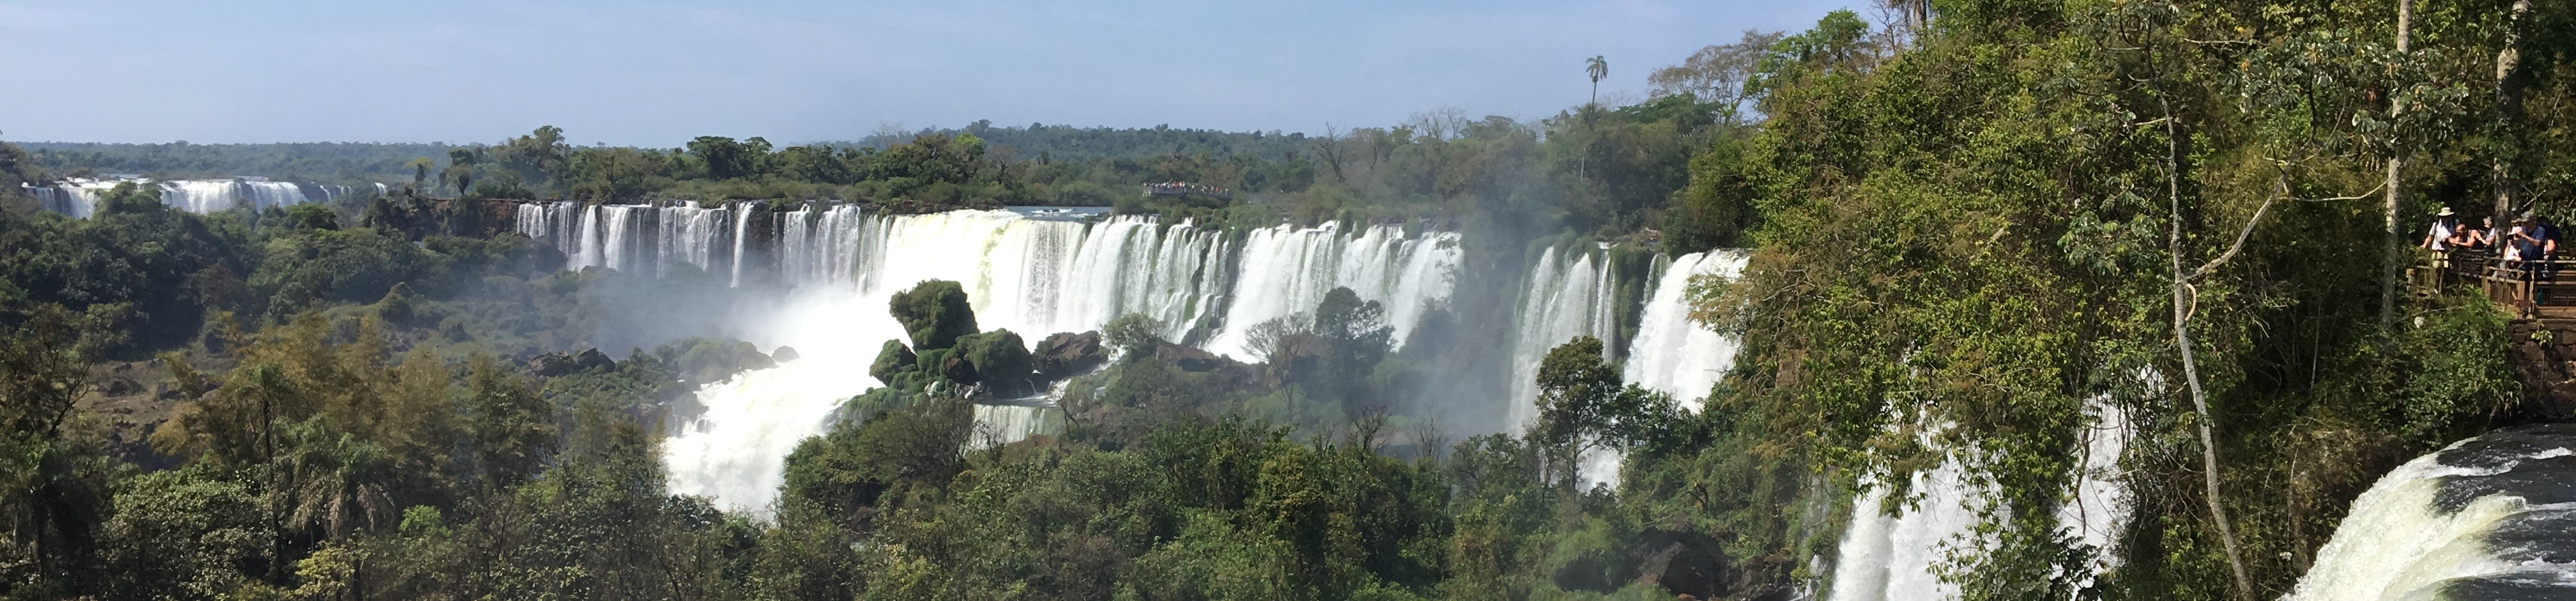 Panoramic view of Iguacu falls.